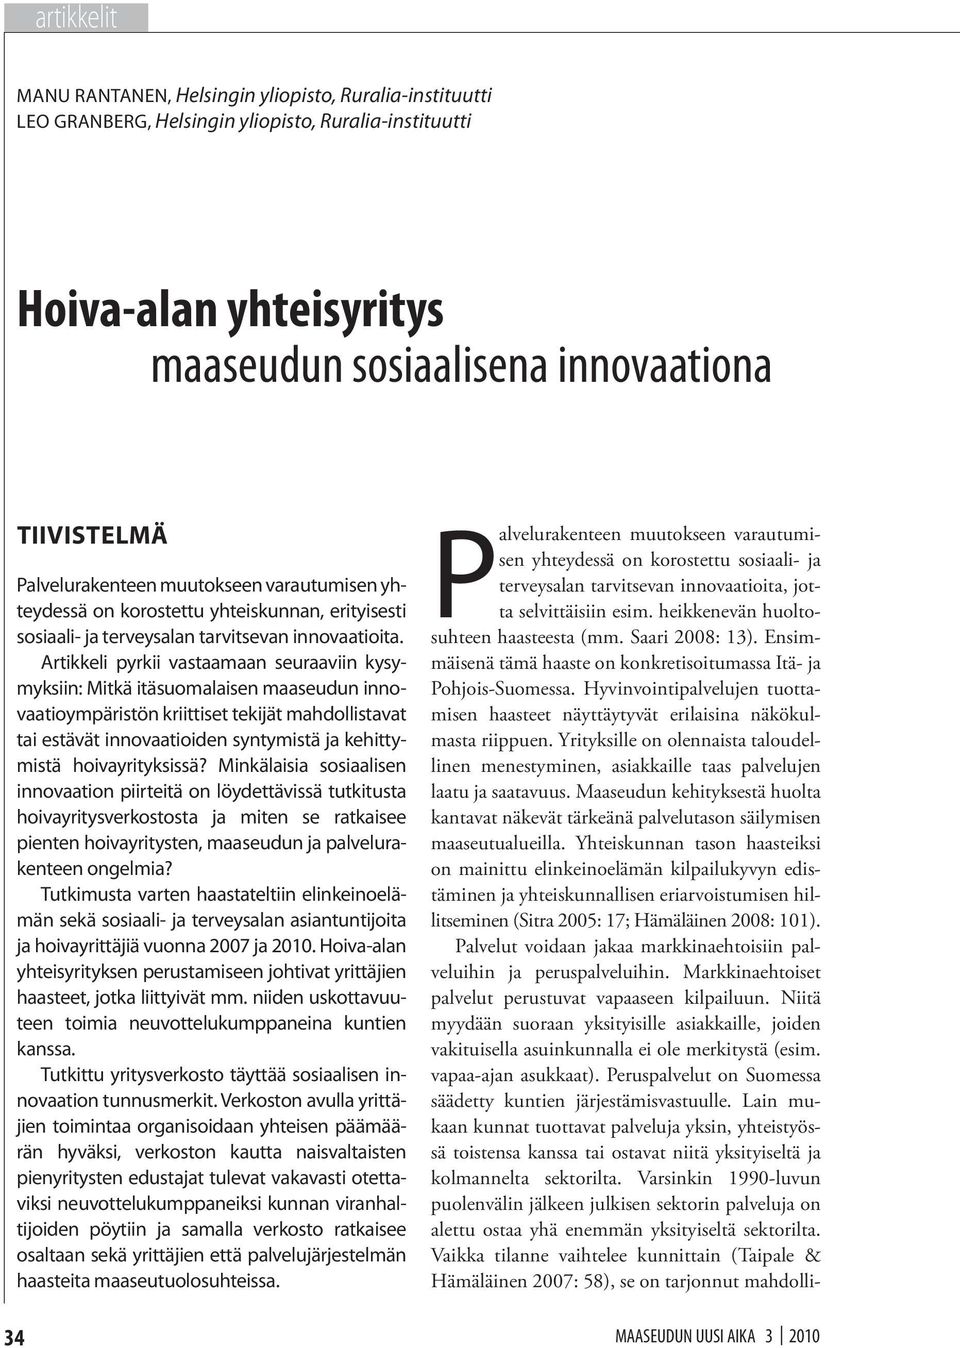 Artikkeli pyrkii vastaamaan seuraaviin kysymyksiin: Mitkä itäsuomalaisen maaseudun innovaatioympäristön kriittiset tekijät mahdollistavat tai estävät innovaatioiden syntymistä ja kehittymistä